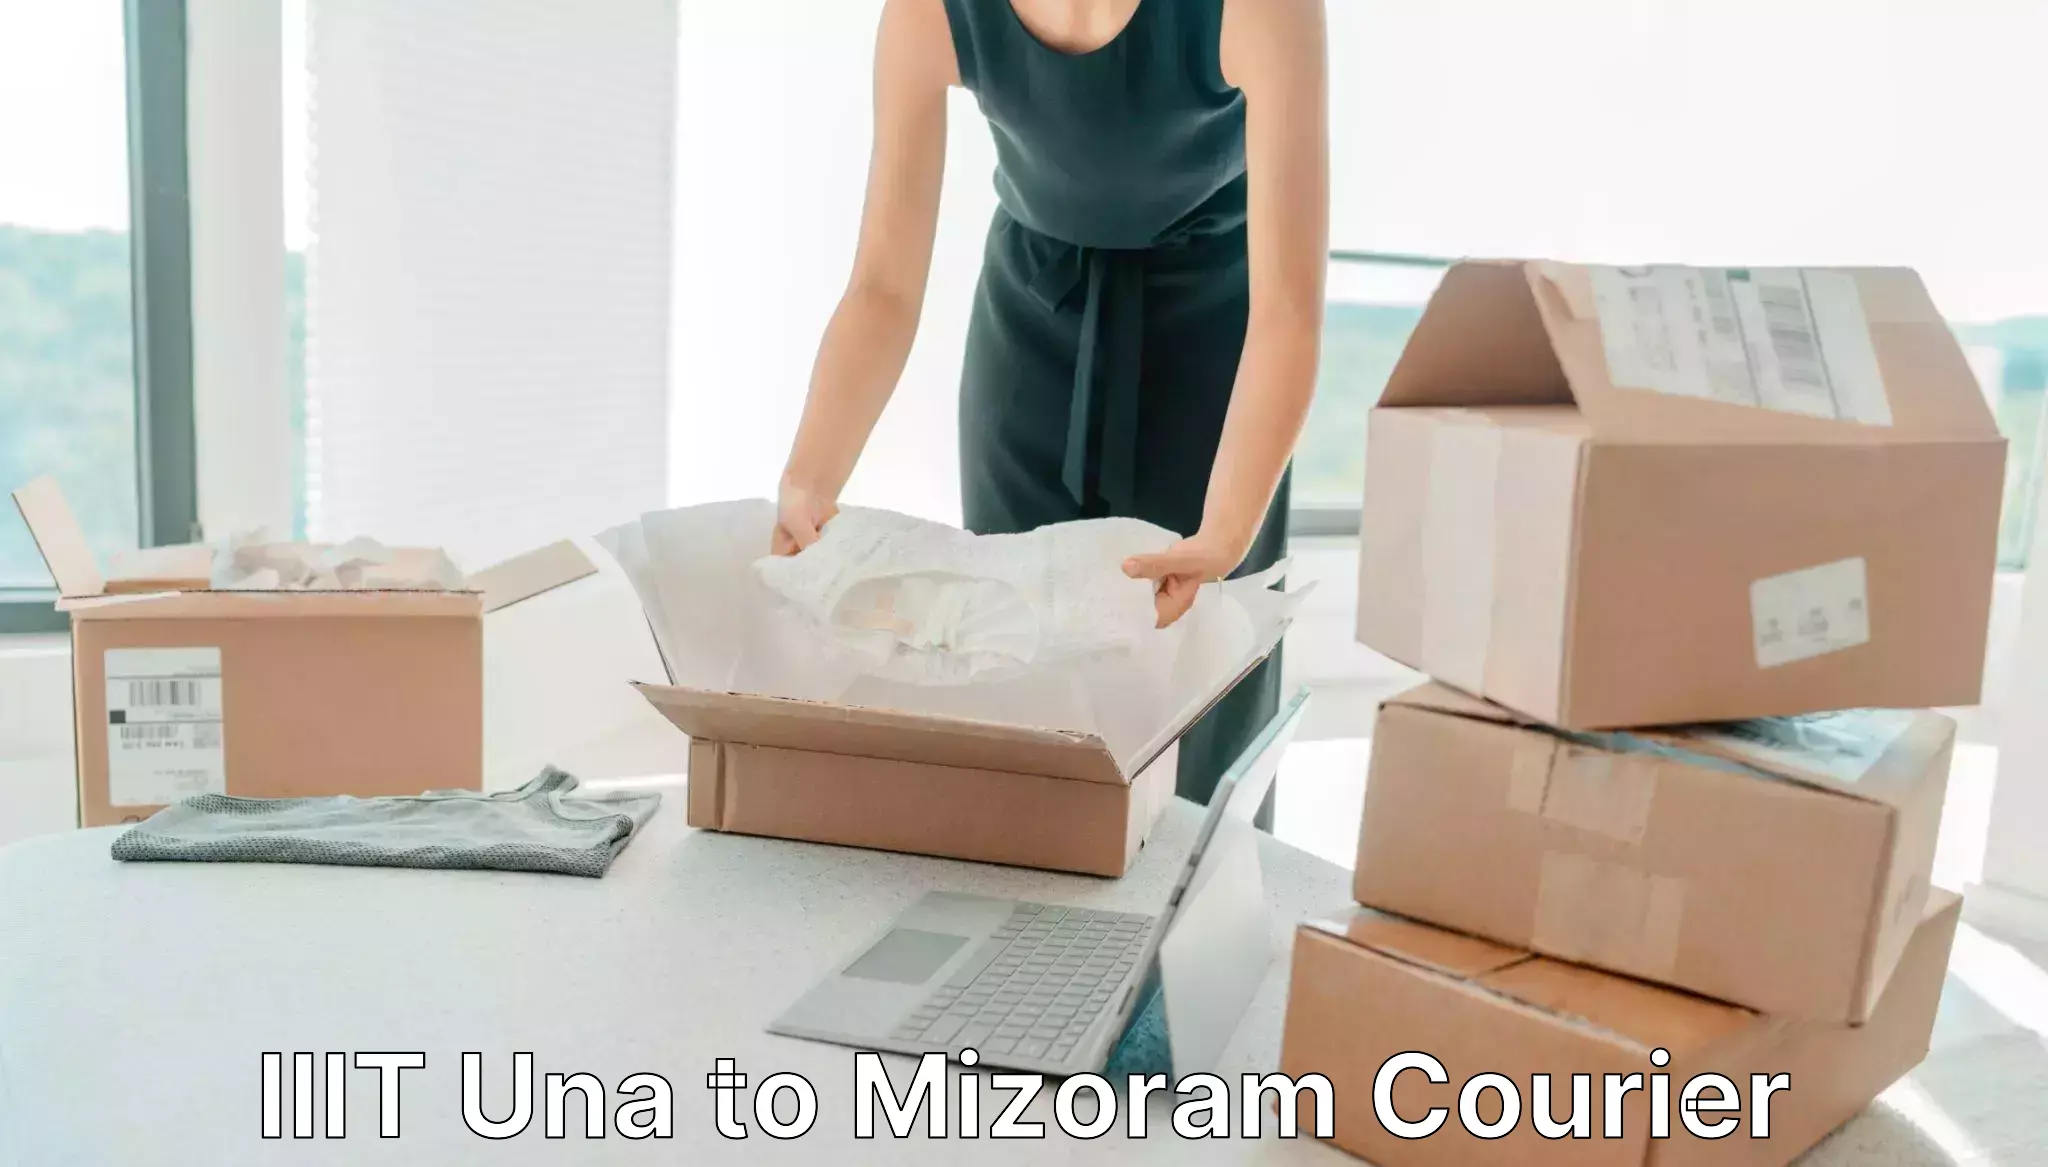 Quick parcel dispatch IIIT Una to Mizoram